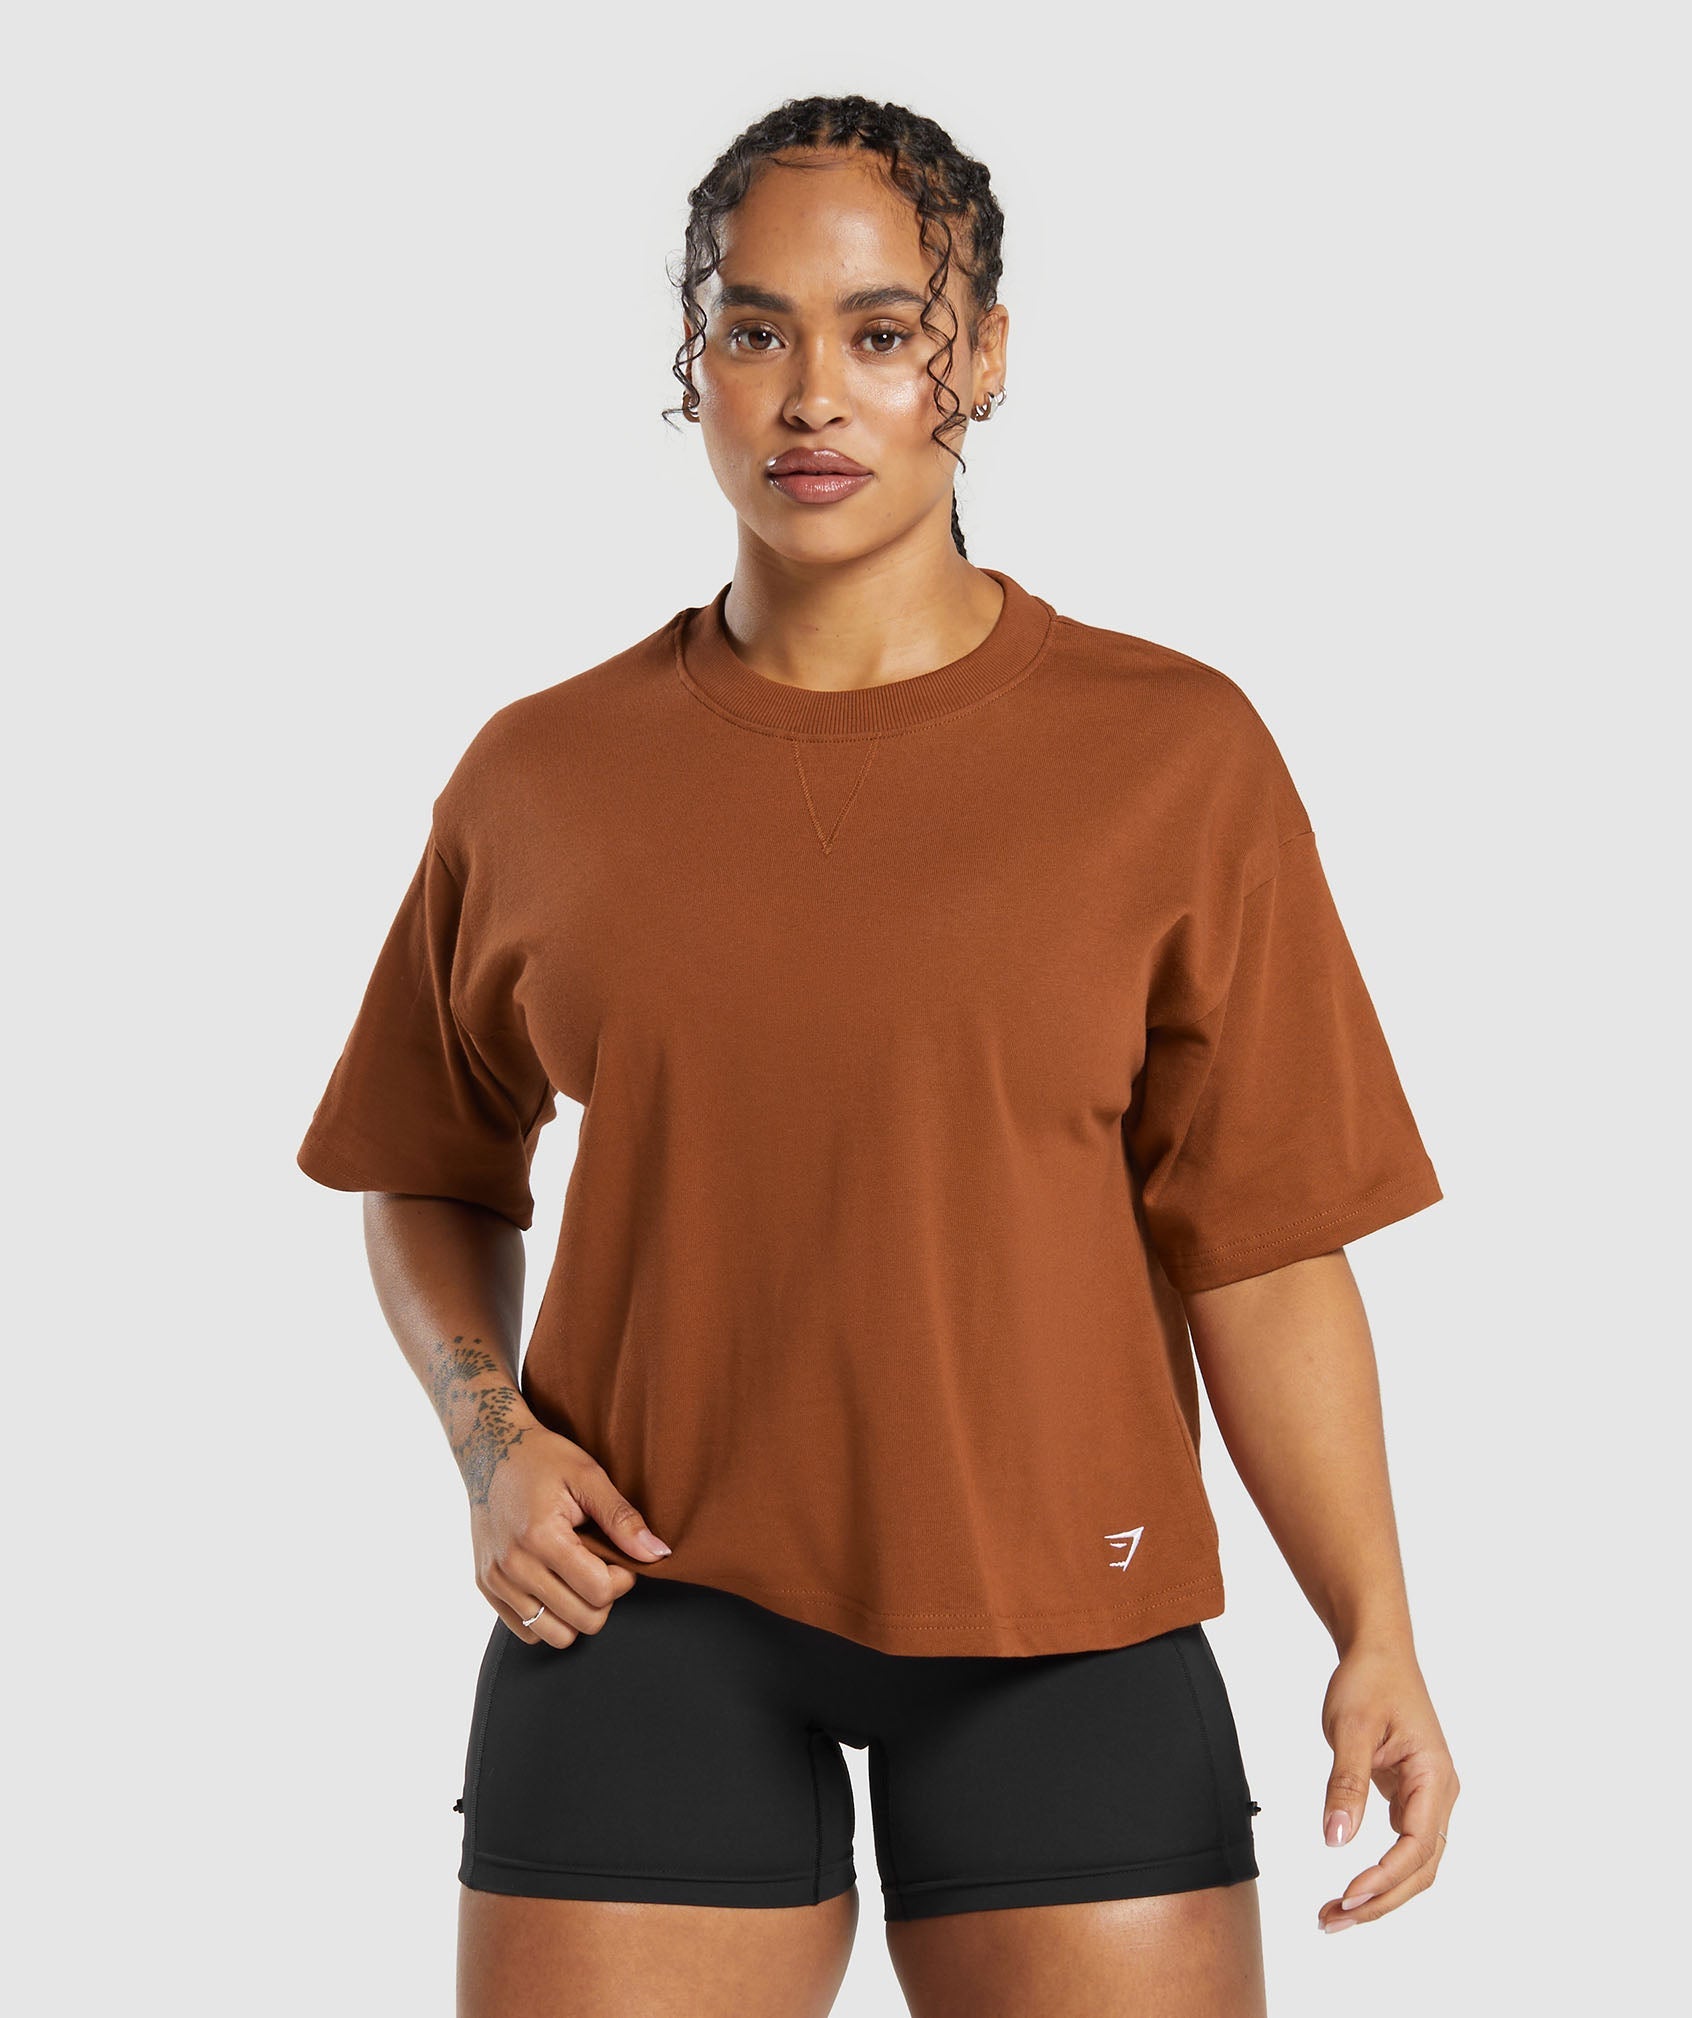 Gymshark Heavyweight Cotton T-Shirt - Copper Brown